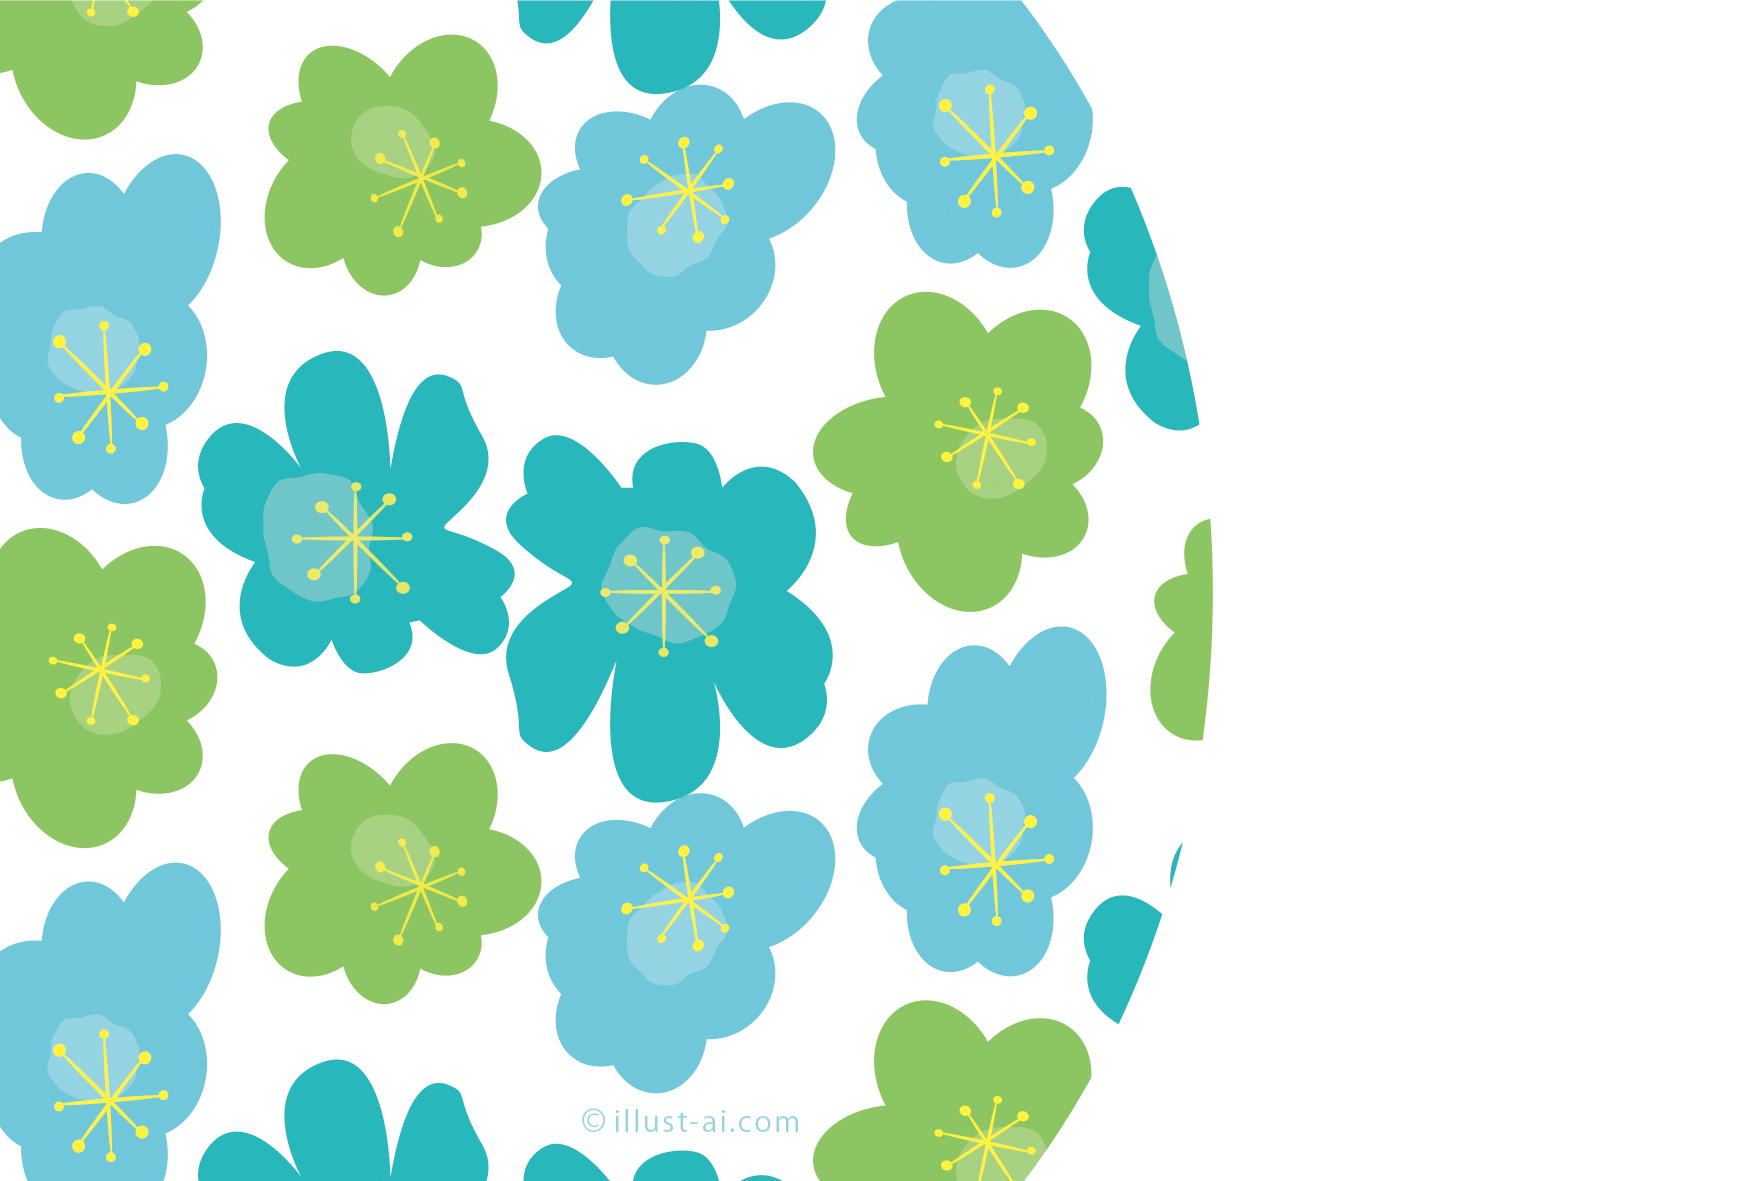 年賀状 亥年 マリメッコ風の青い梅の花のイラスト 年賀状17無料イラスト素材集